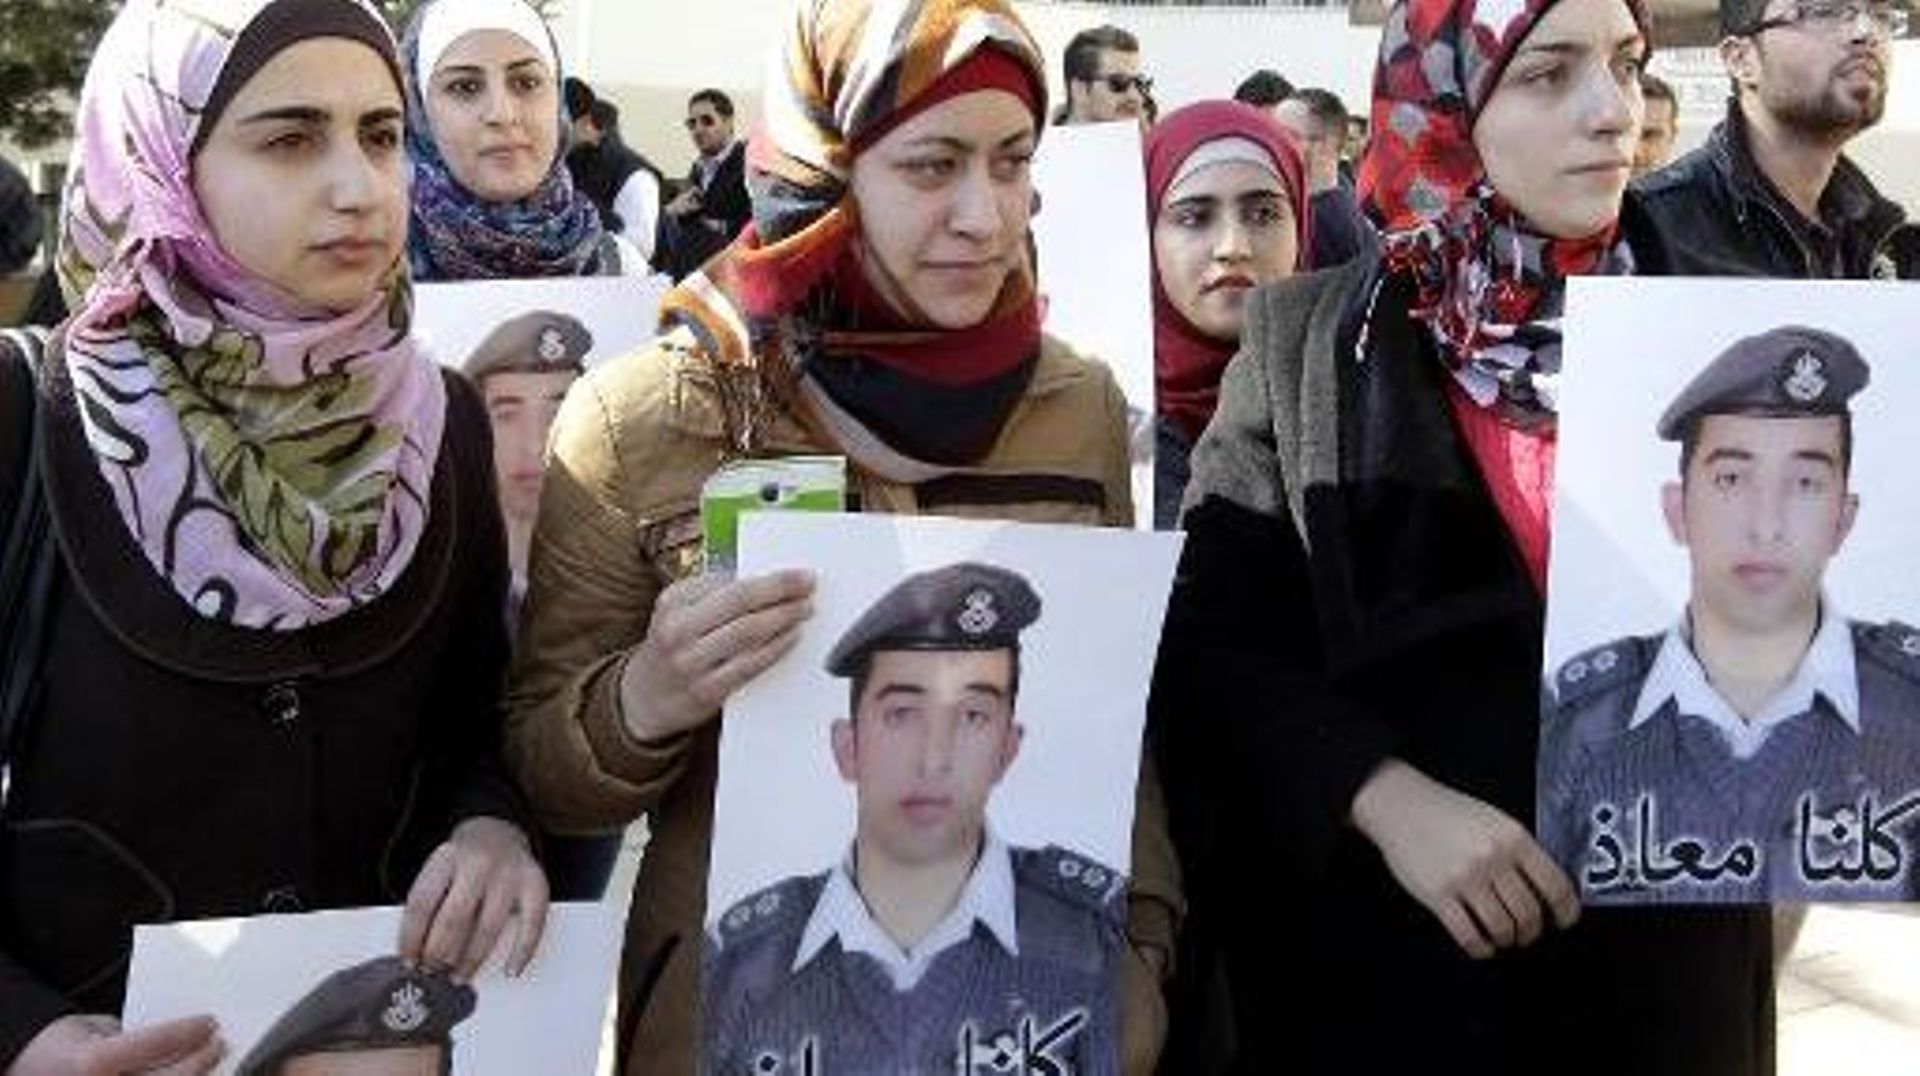 Anwar Tarawneh (c), la femme du pilote jordanien otage du groupe Etat islamique, participe à une manifestation pour la libération de son mari, le 3 février 2015 à Amman